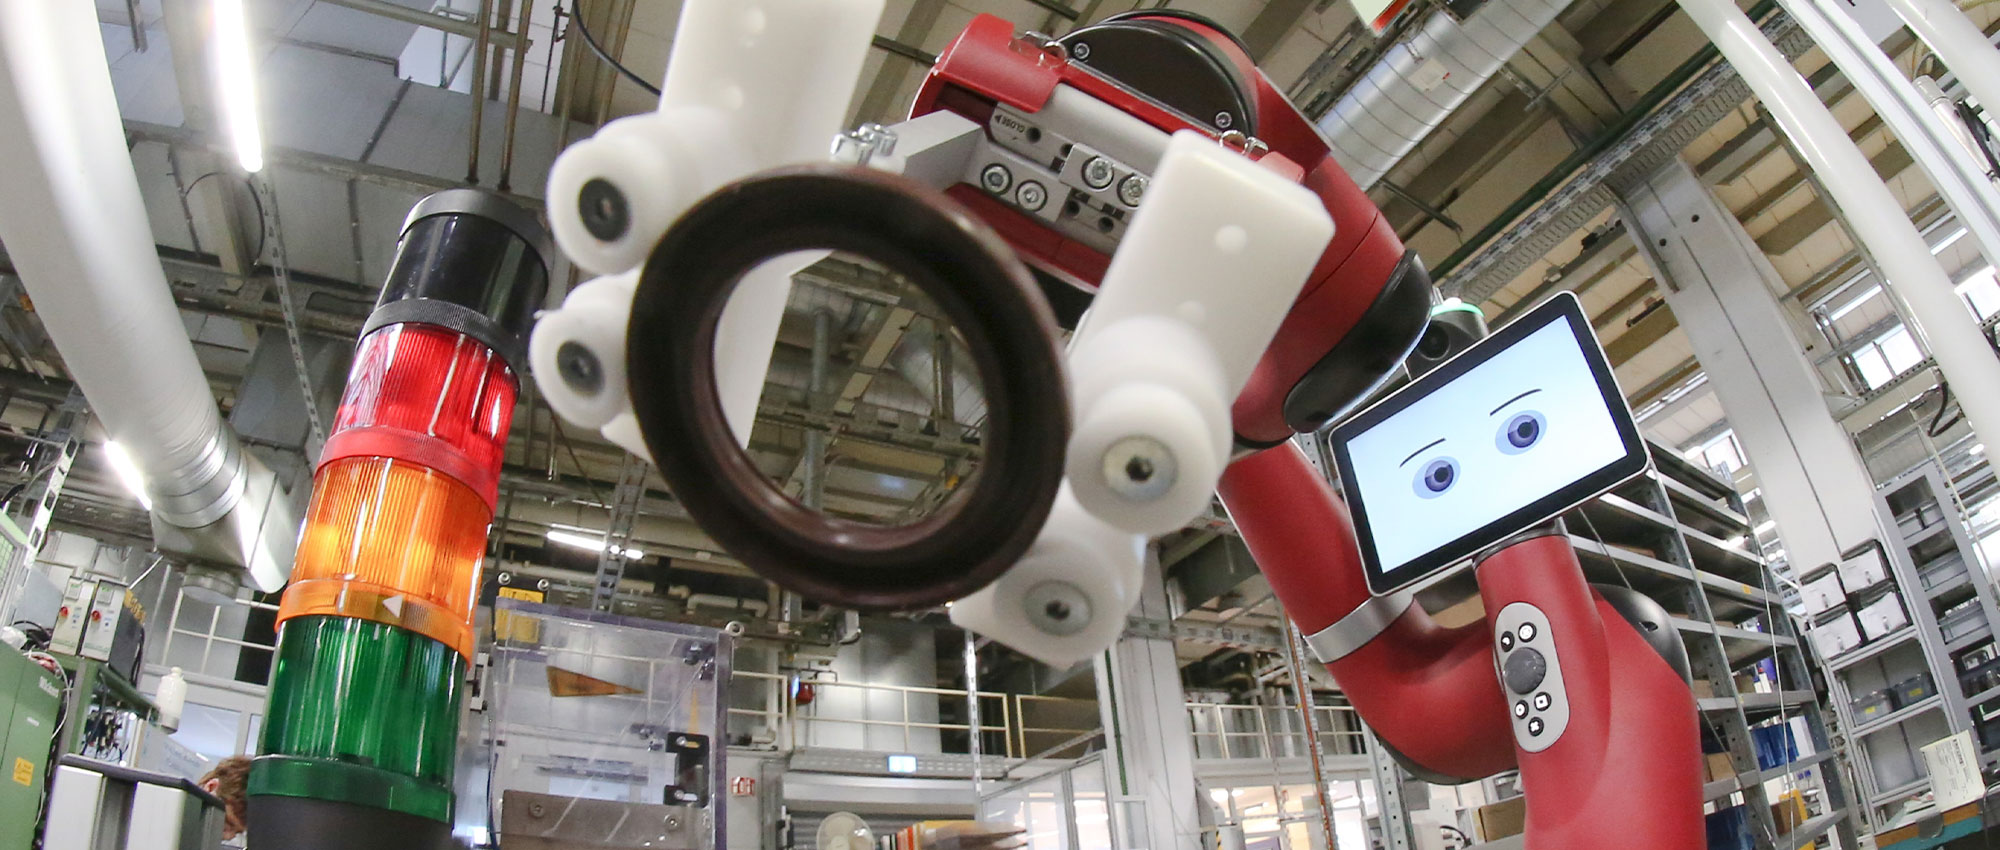 Ein Mann bedient den roten Roboter Cobot in einer Fabrik im Hintergrund